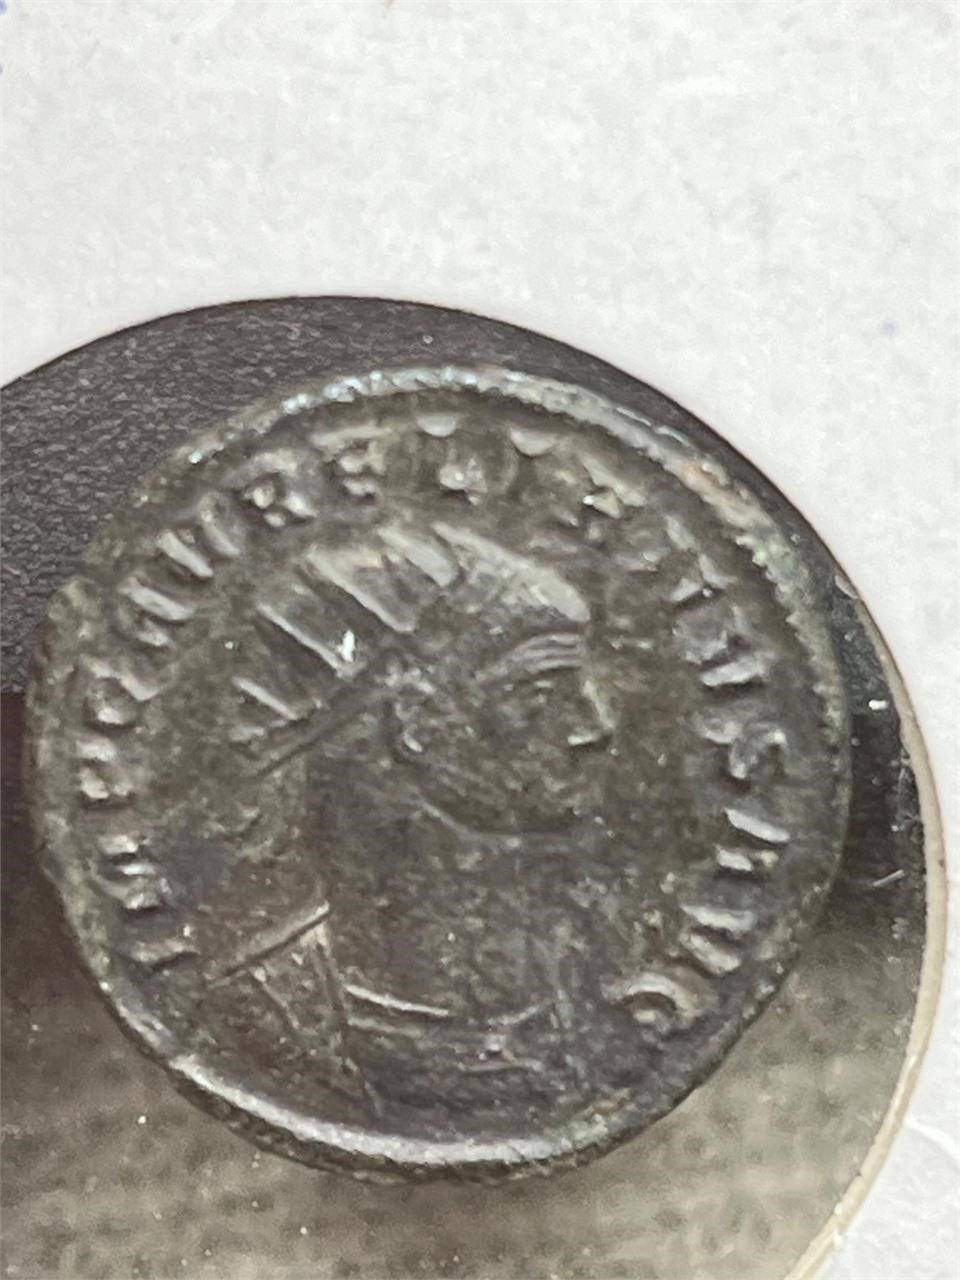 2 Roman Empire Coins